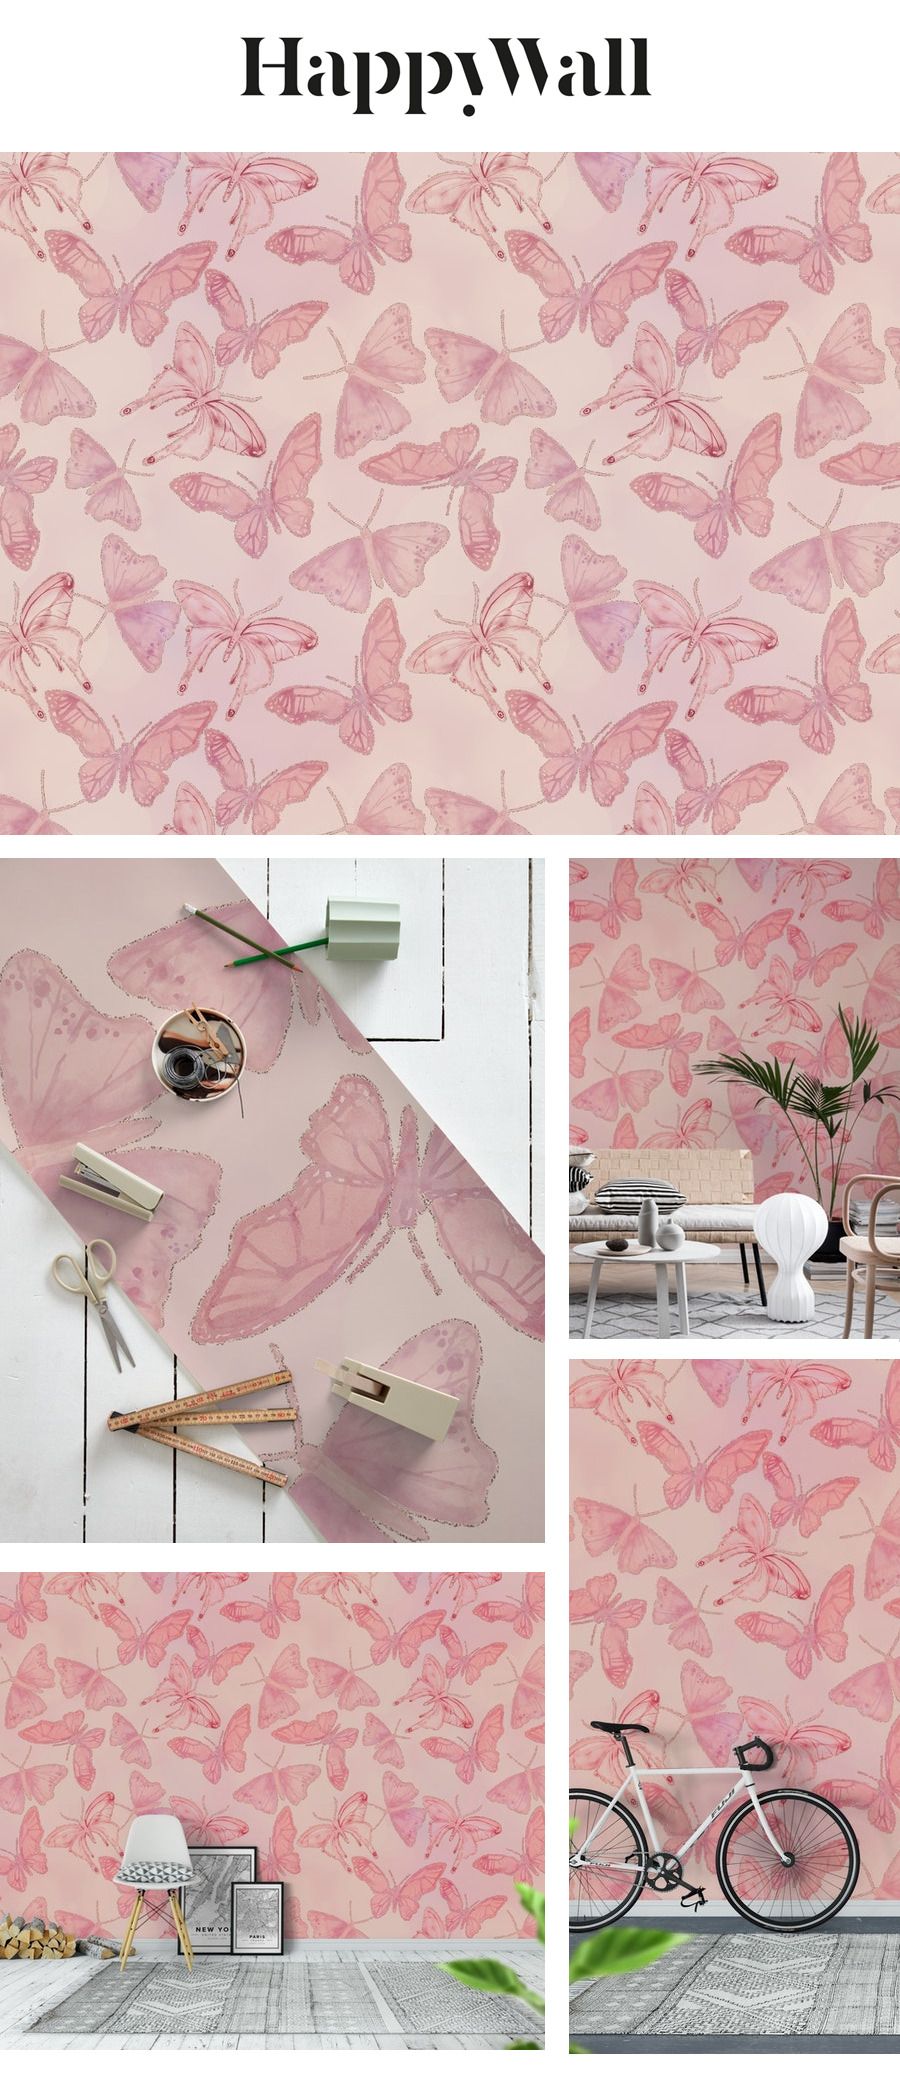 Mural , HD Wallpaper & Backgrounds